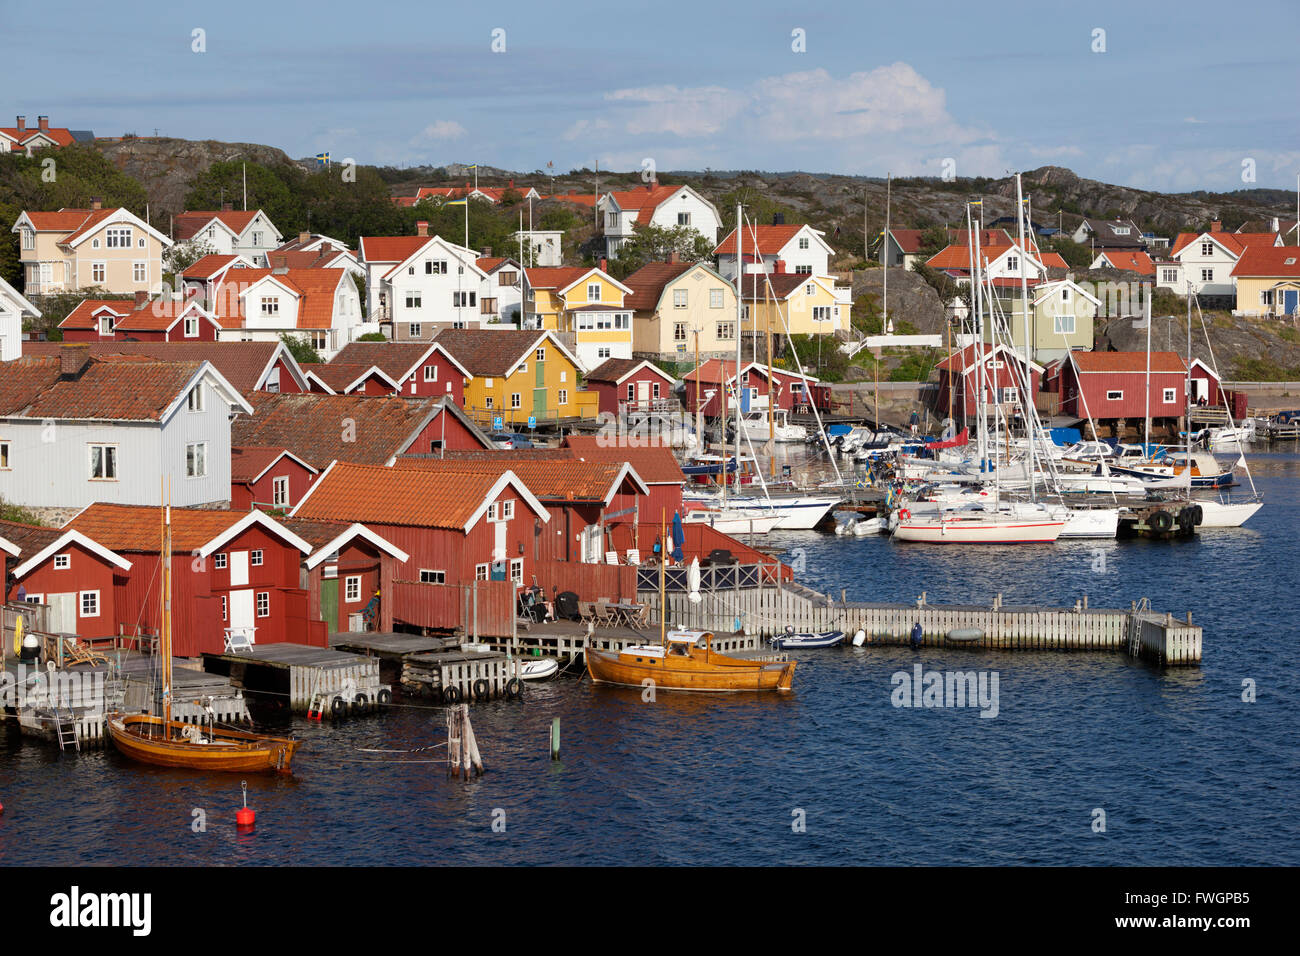 Rosso Falu case di pescatori in porto, Halleviksstrand, Orust, Bohuslan Costa, a sud-ovest della Svezia, Svezia, Scandinavia, Europa Foto Stock